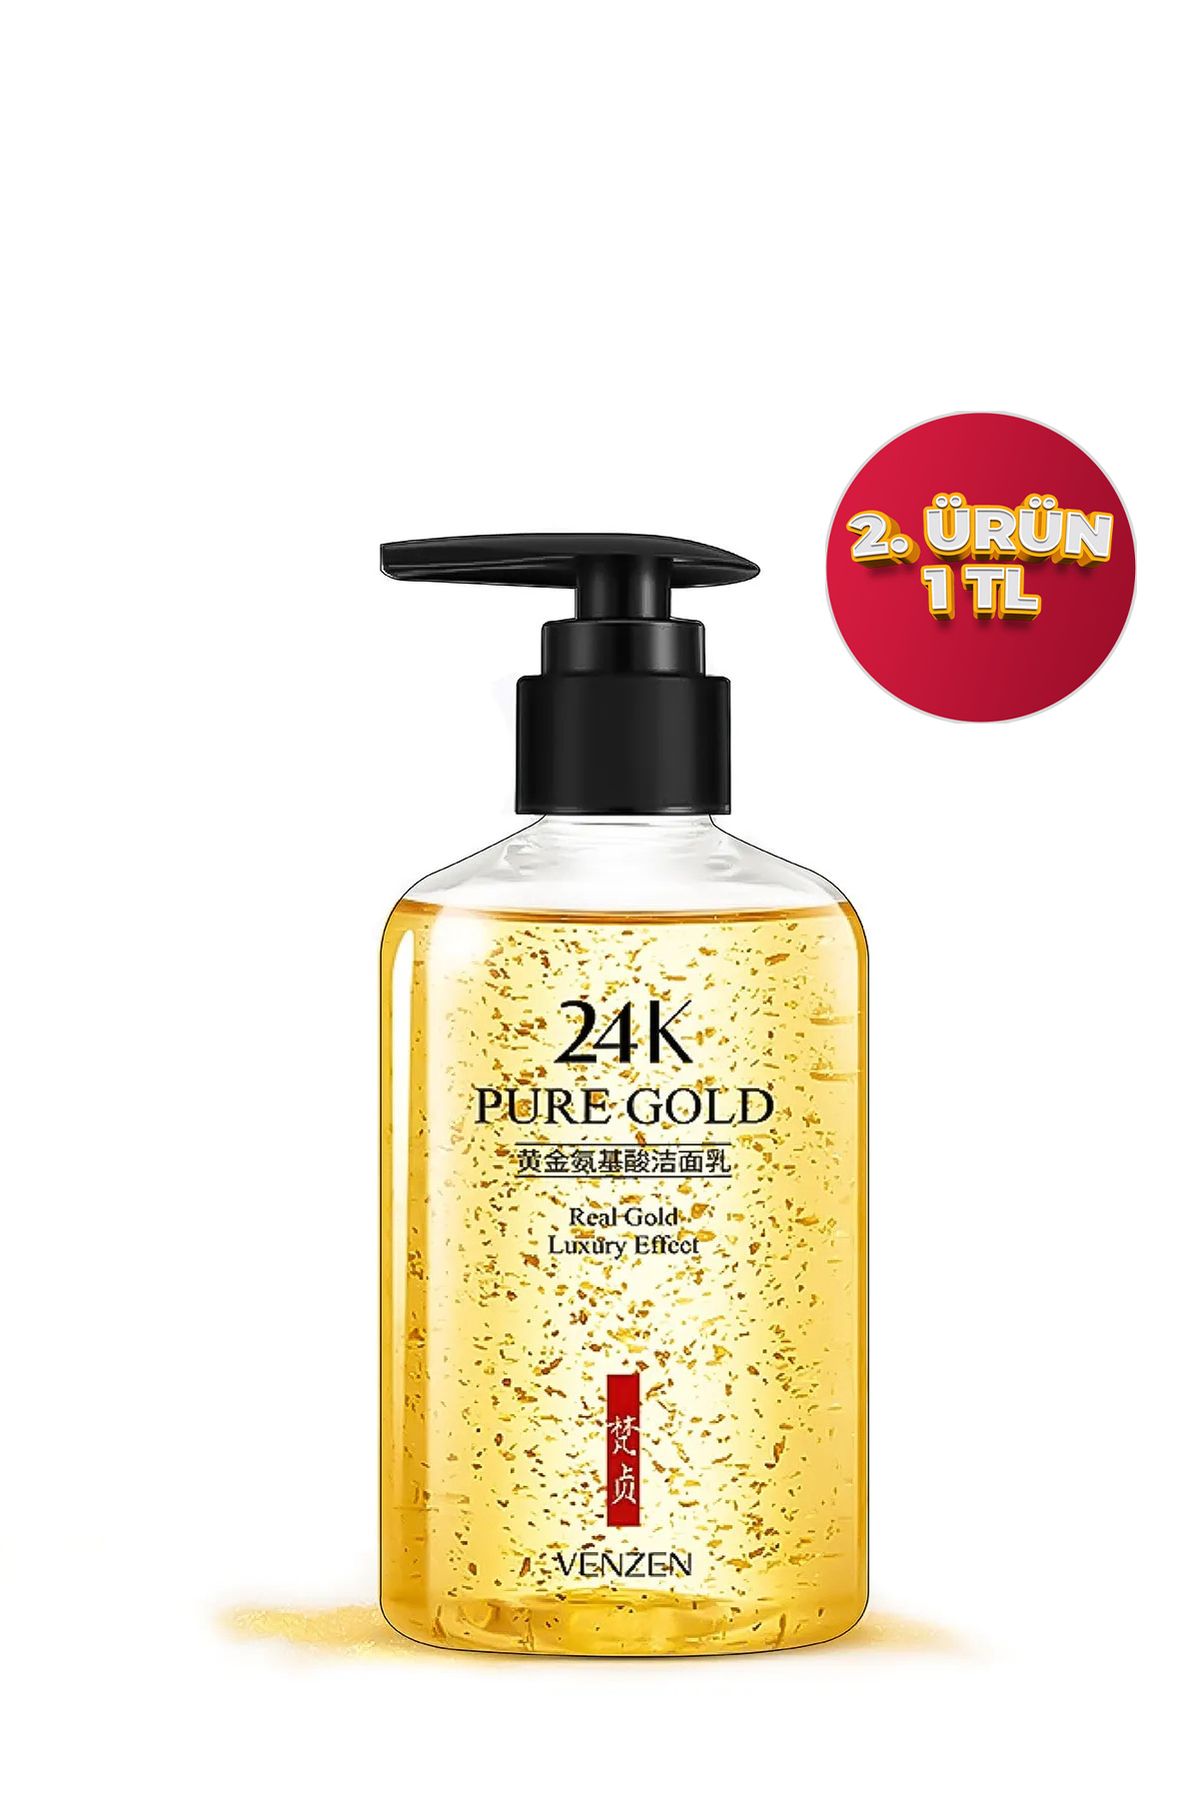 Venzen Su Bazlı 24k Altın Özlü Amino Asit Yüz&makyaj Temizleme Jeli (200ML)